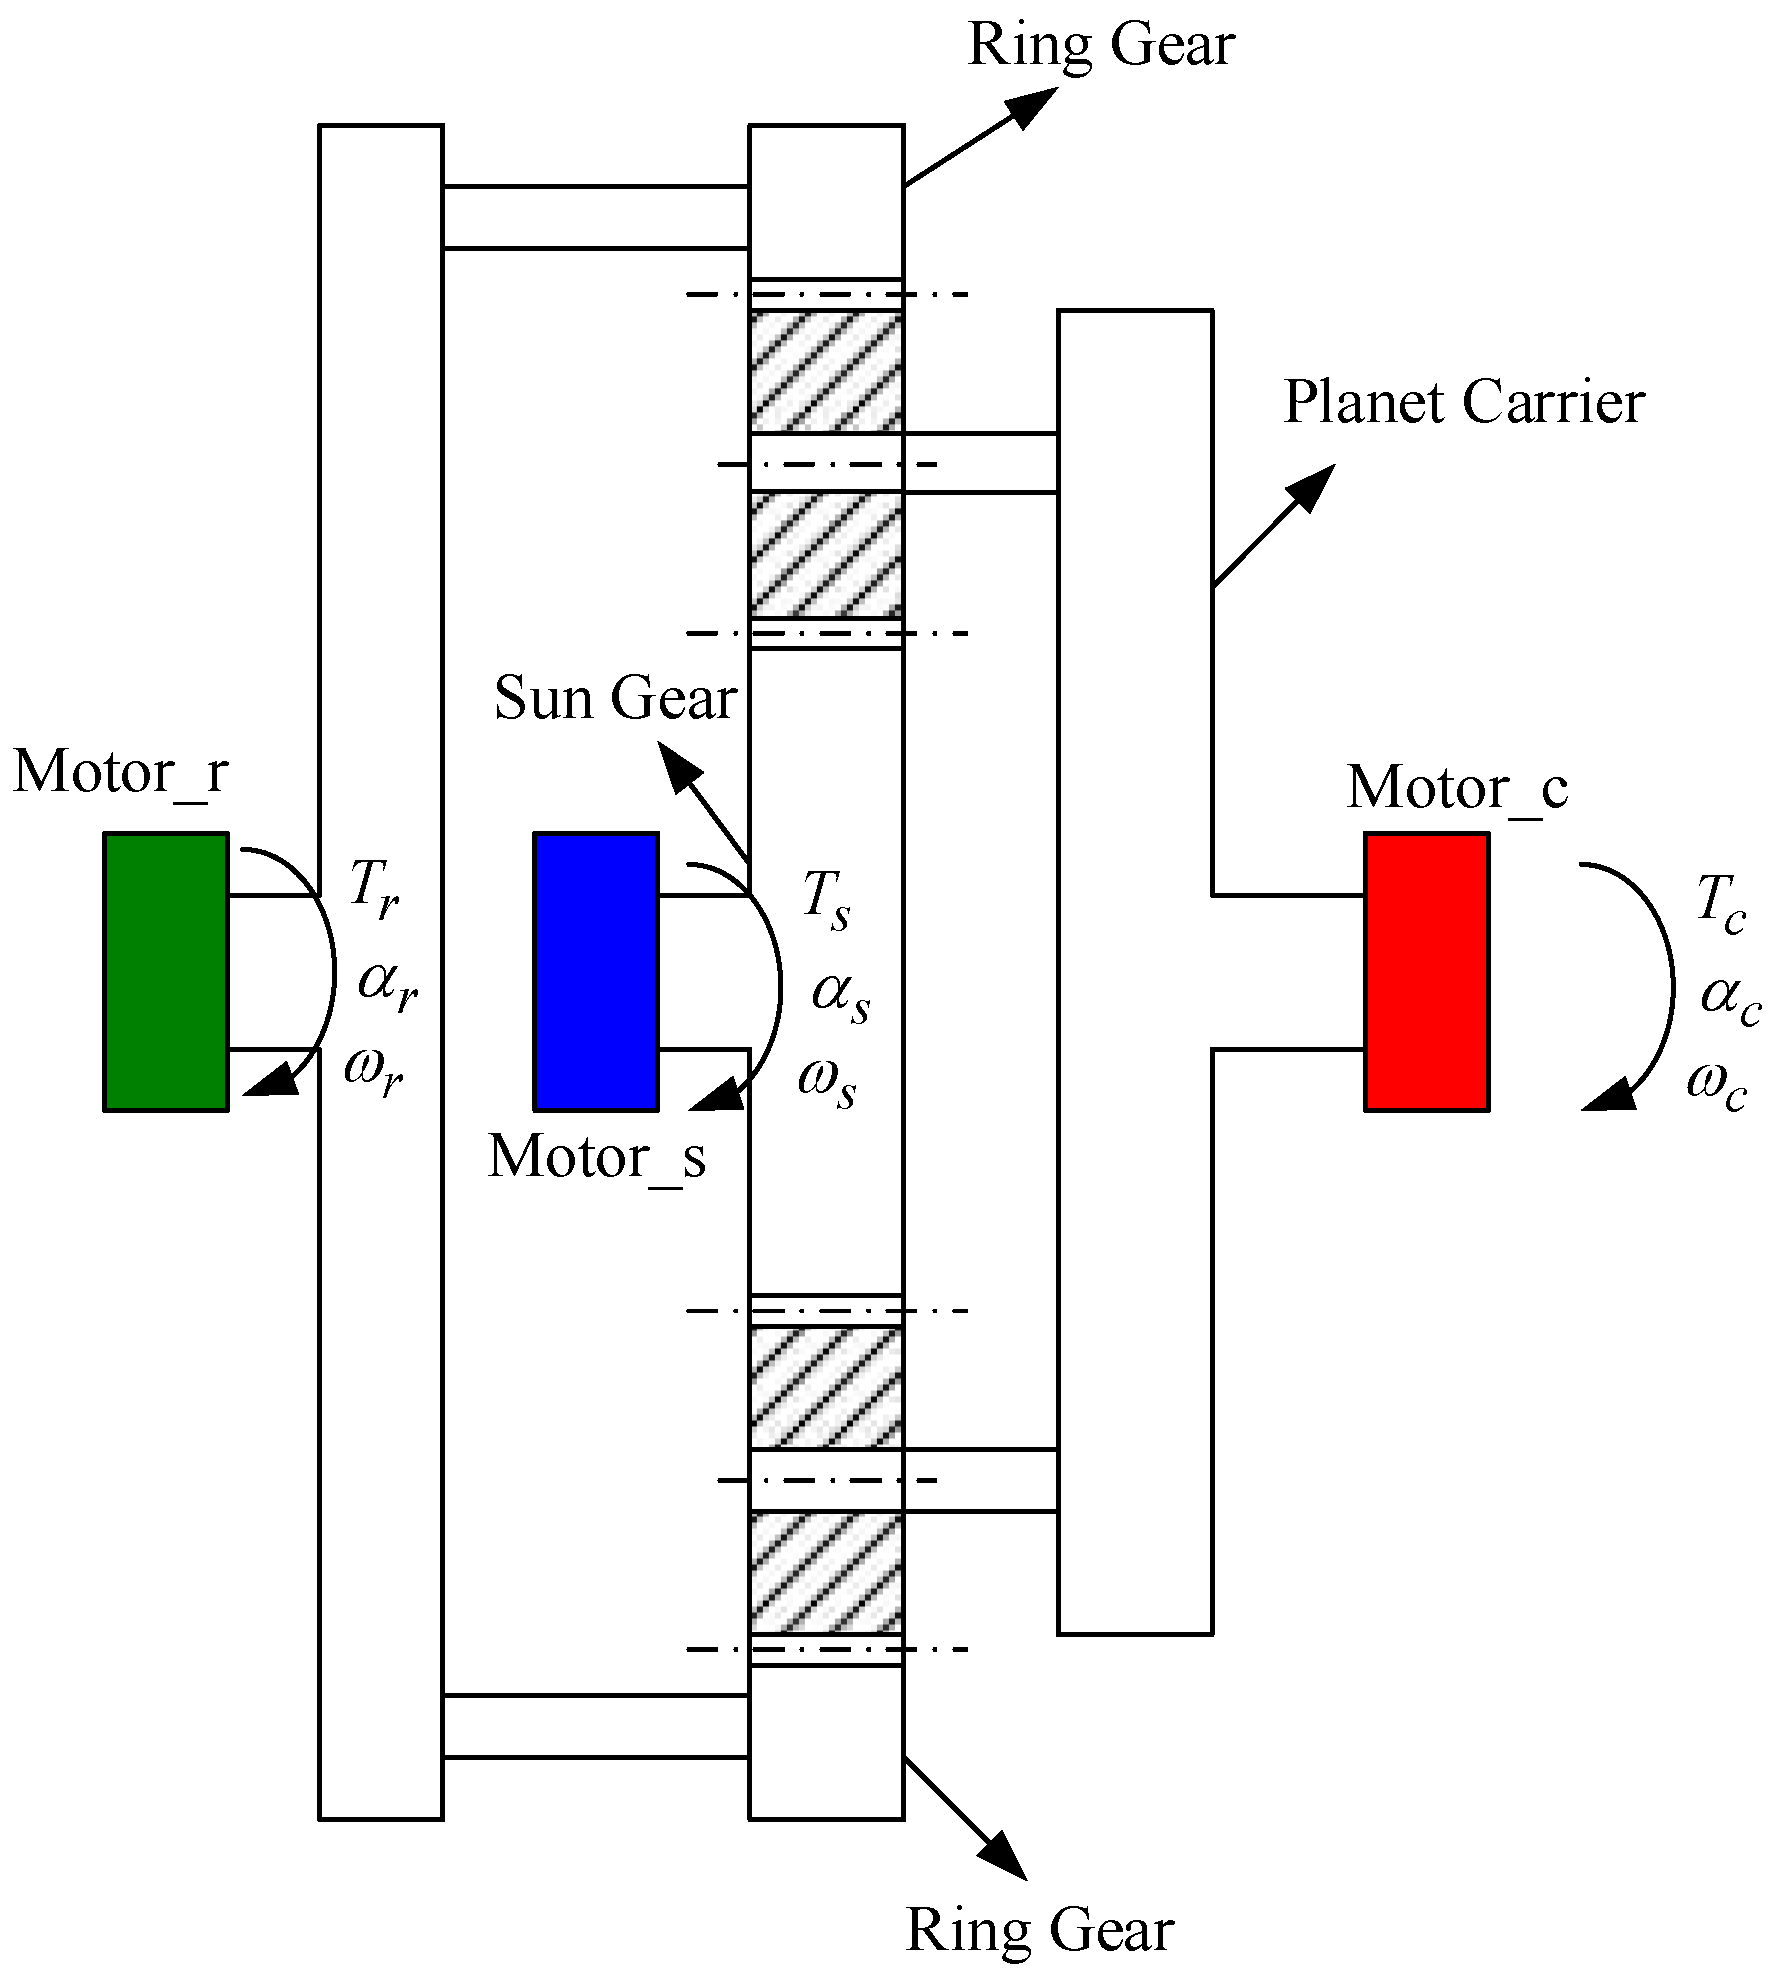 Crown-gear (planar generator) generation concept